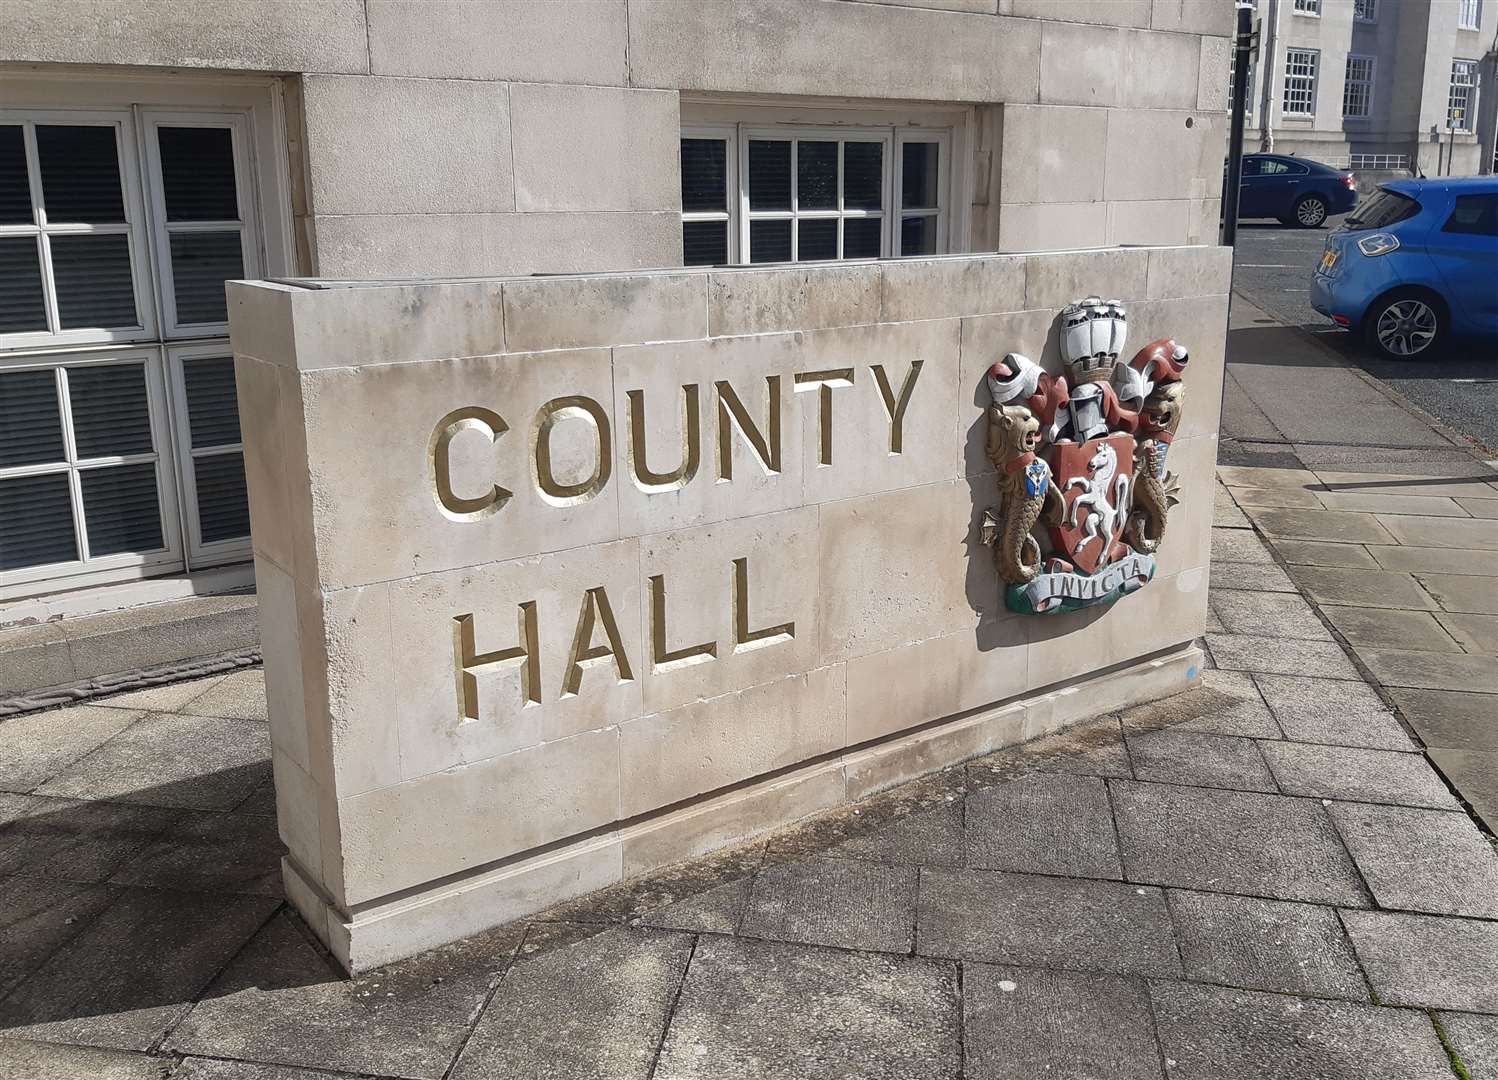 KCC’s county hall